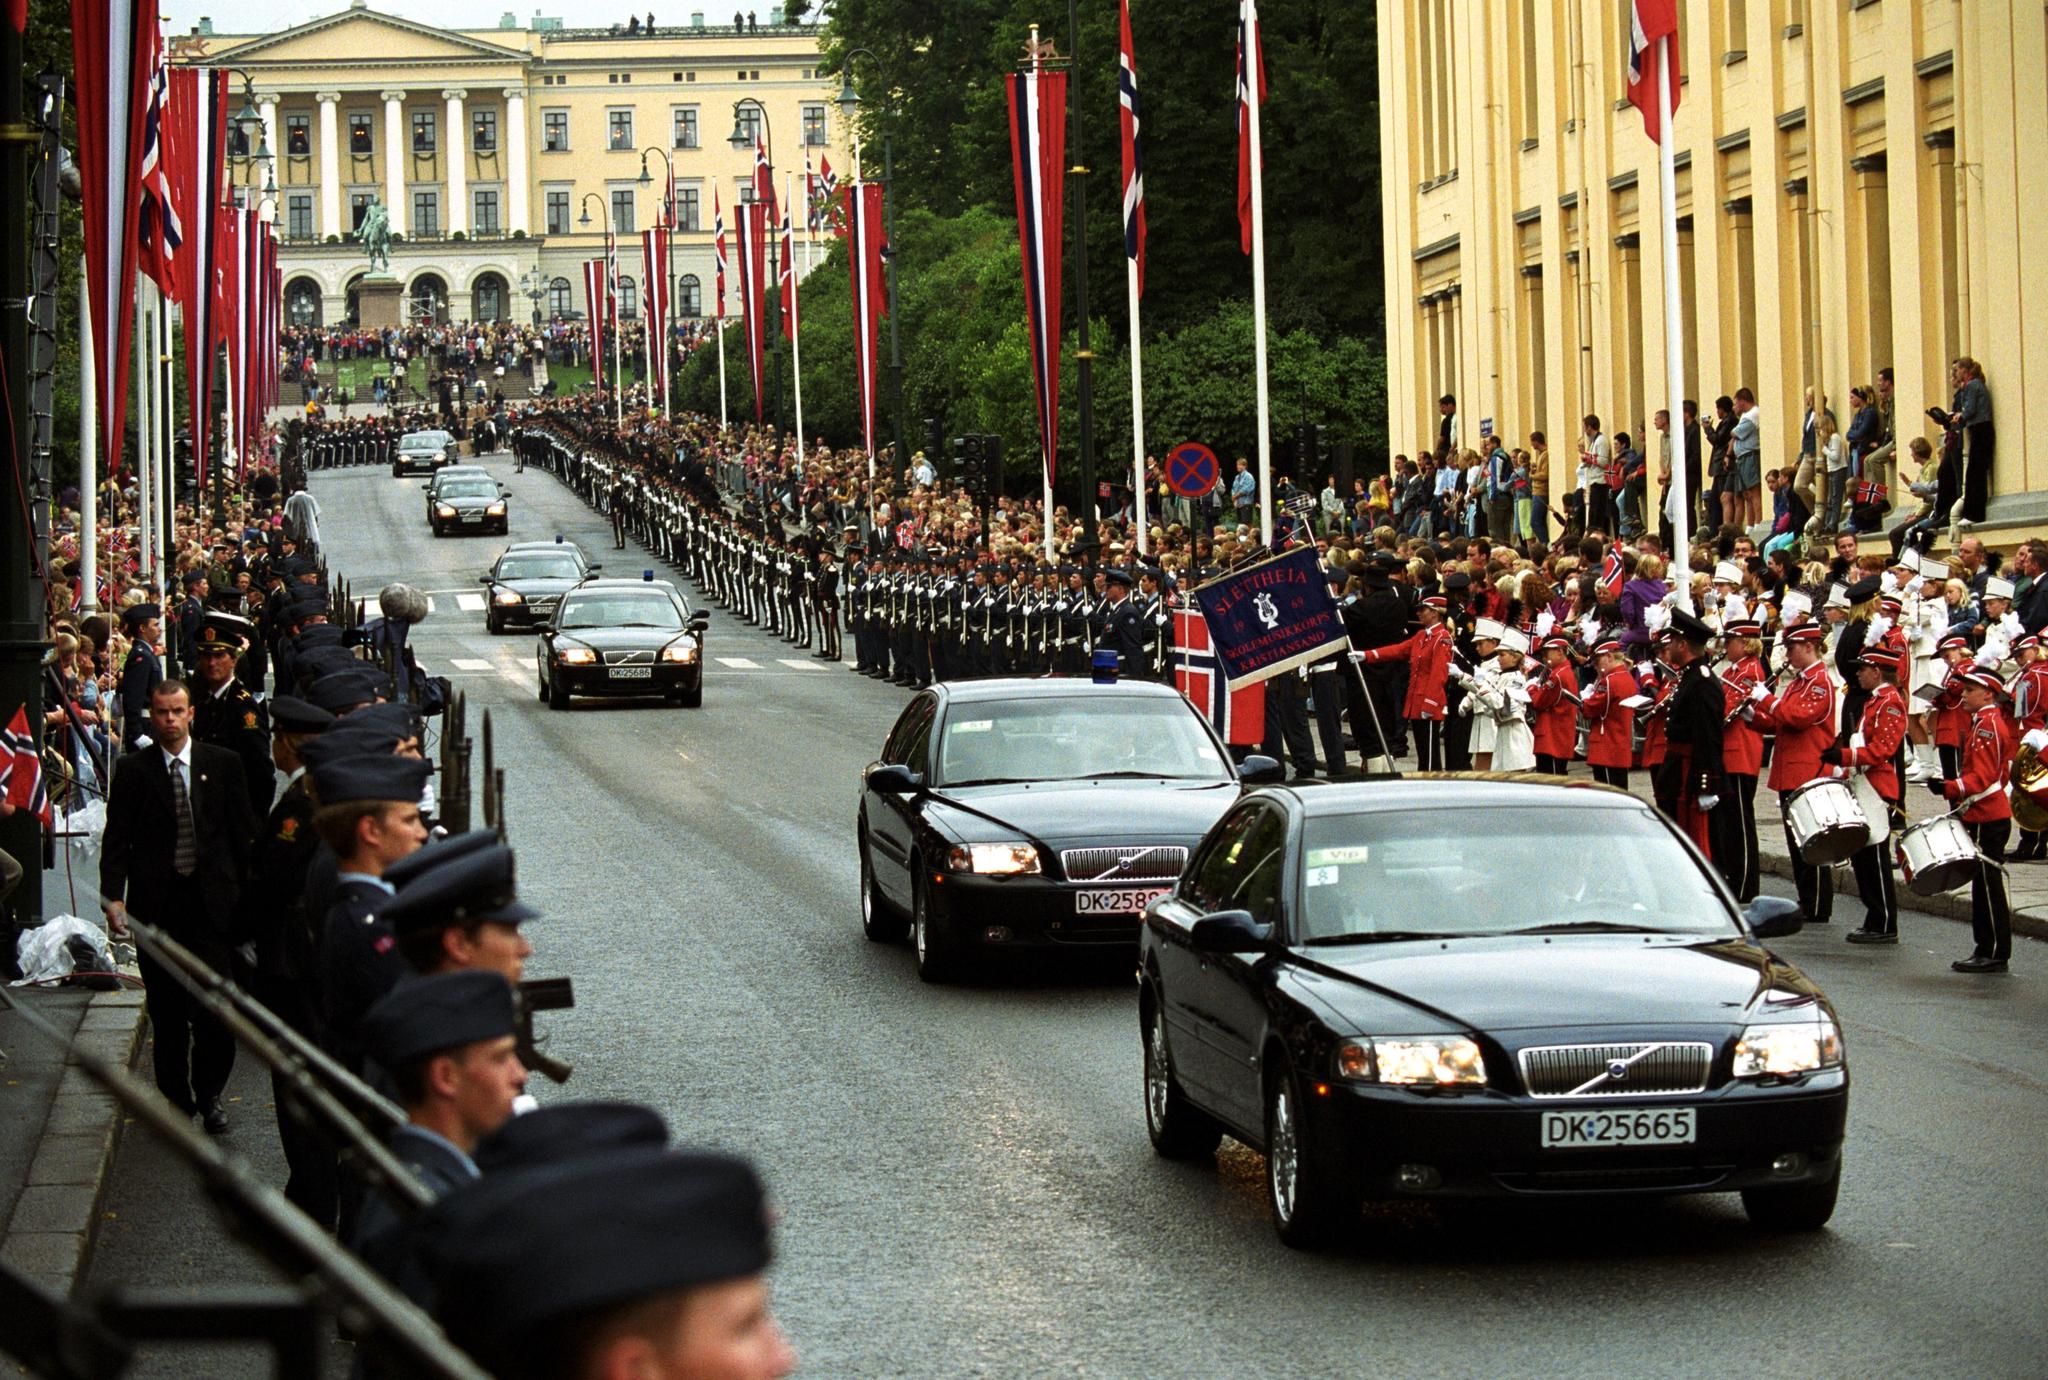 Ikke siden kronprinsens bryllup i 2001 er det ventet så mange prominente personer til Oslo som tirsdag og onsdag. Både fra Slottet og andre residenser skal de kongelige kjøres i kortesje. I 2001 stoppet kortesjene ved Domkirken. Onsdag skal de til Bjørvika. 